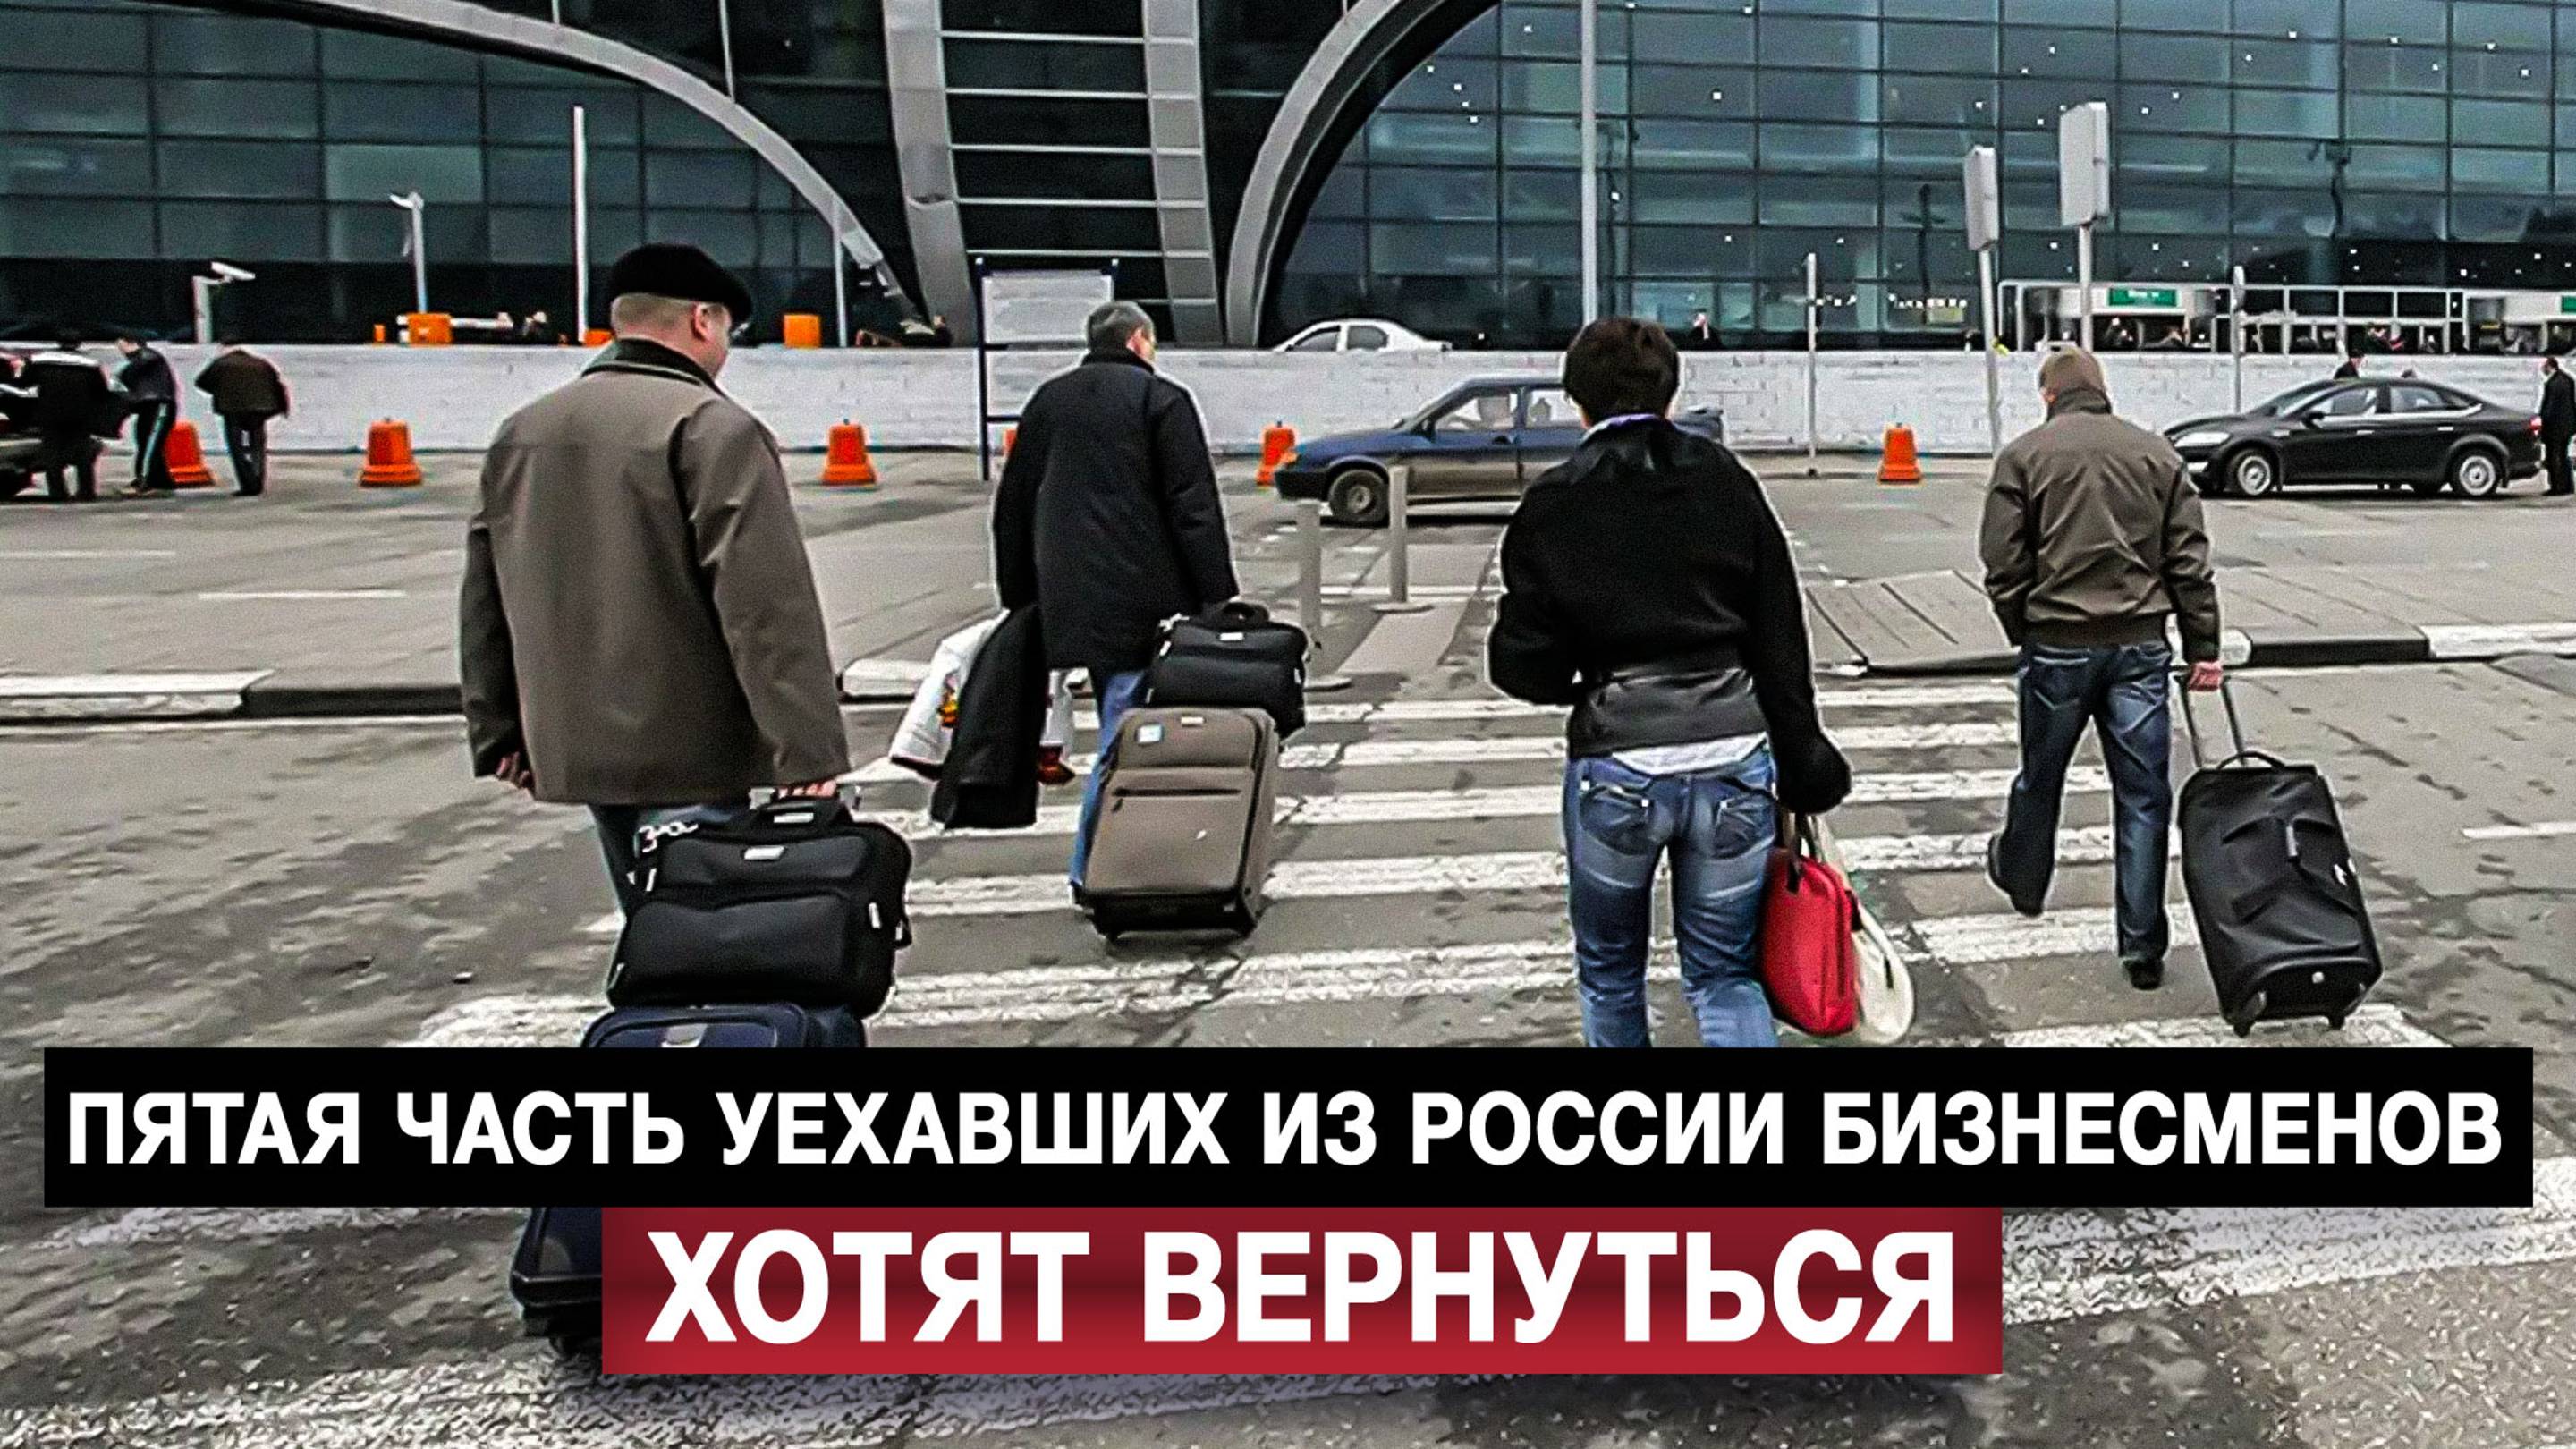 Пятая часть уехавших из России бизнесменов хотят вернуться